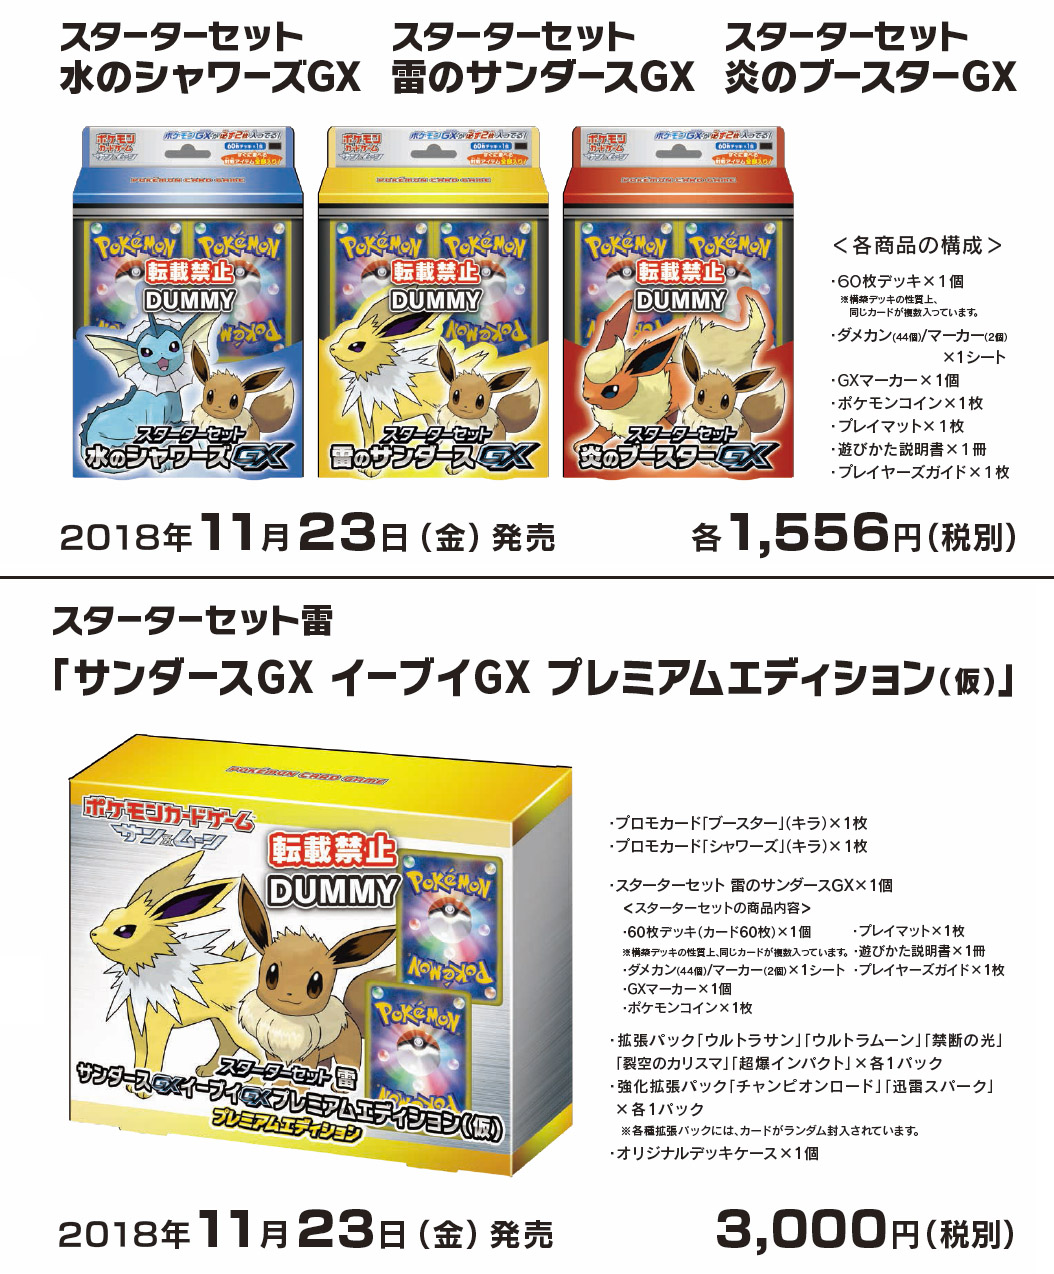 REV 代購/預購: ポケモンカードゲーム サン&ムーン スターターセット 4種 ("Pokemon Card Game Sun & Moon